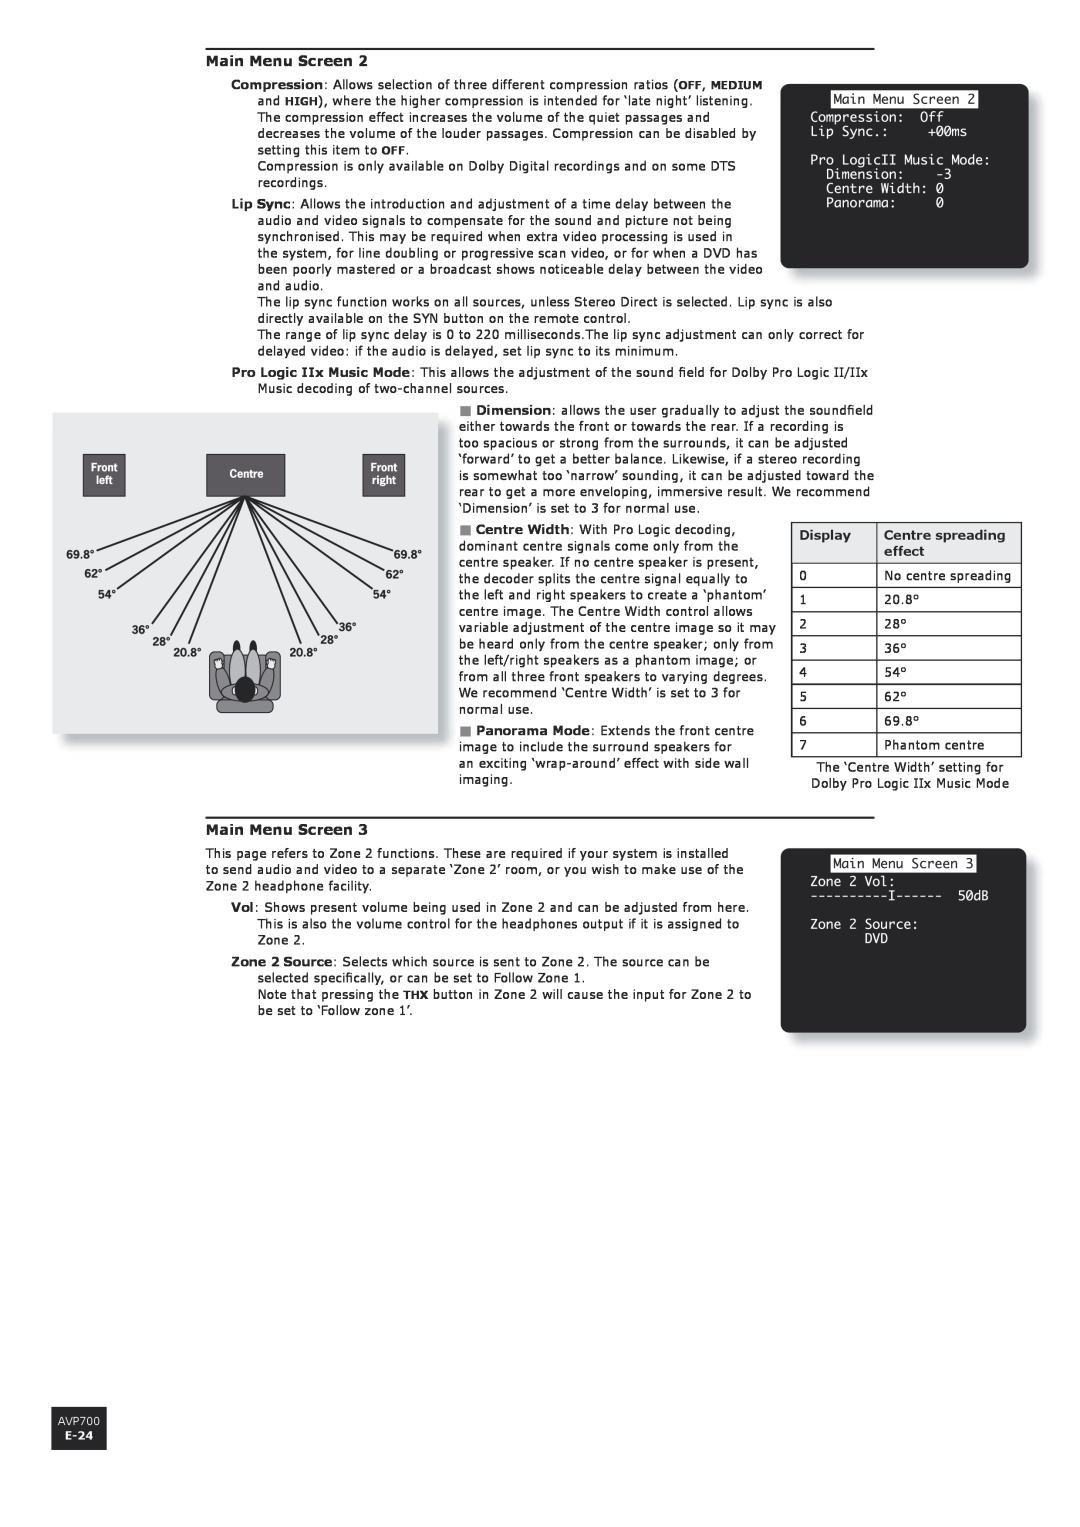 Arcam AVP700 manual Main Menu Screen, Display, Centre spreading, effect 